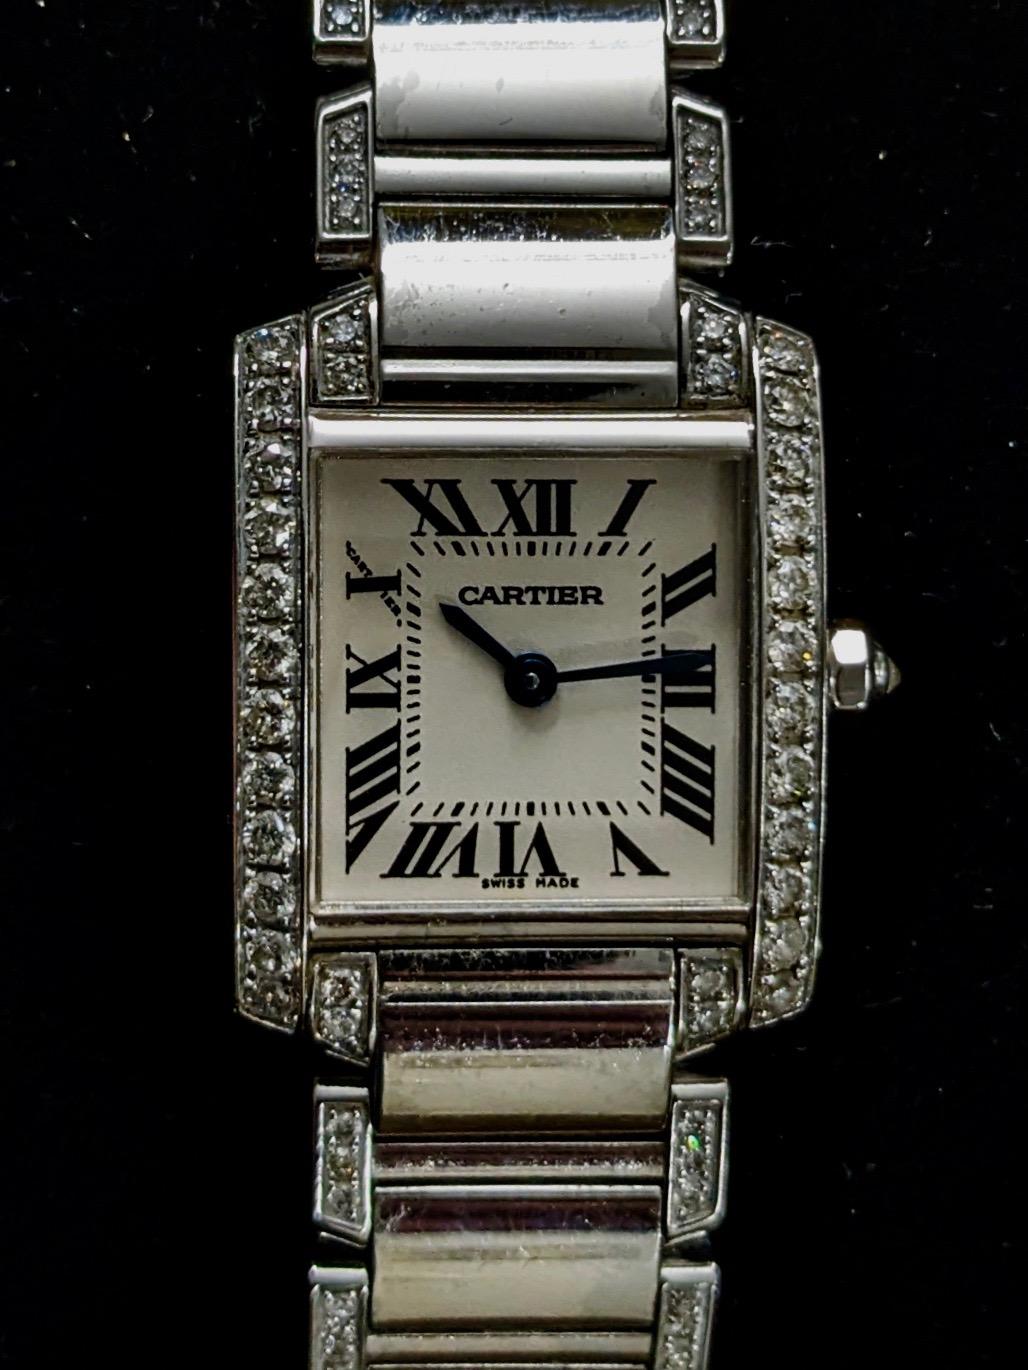 Cartier Francaise Diamonds
Referenza 2384
Materiale acciaio e diamanti taglio brillante
Diametro 20x25 mm
Movimento al quarzo
L'orologio è fornito con la scatola originale, perfettamente funzionante.